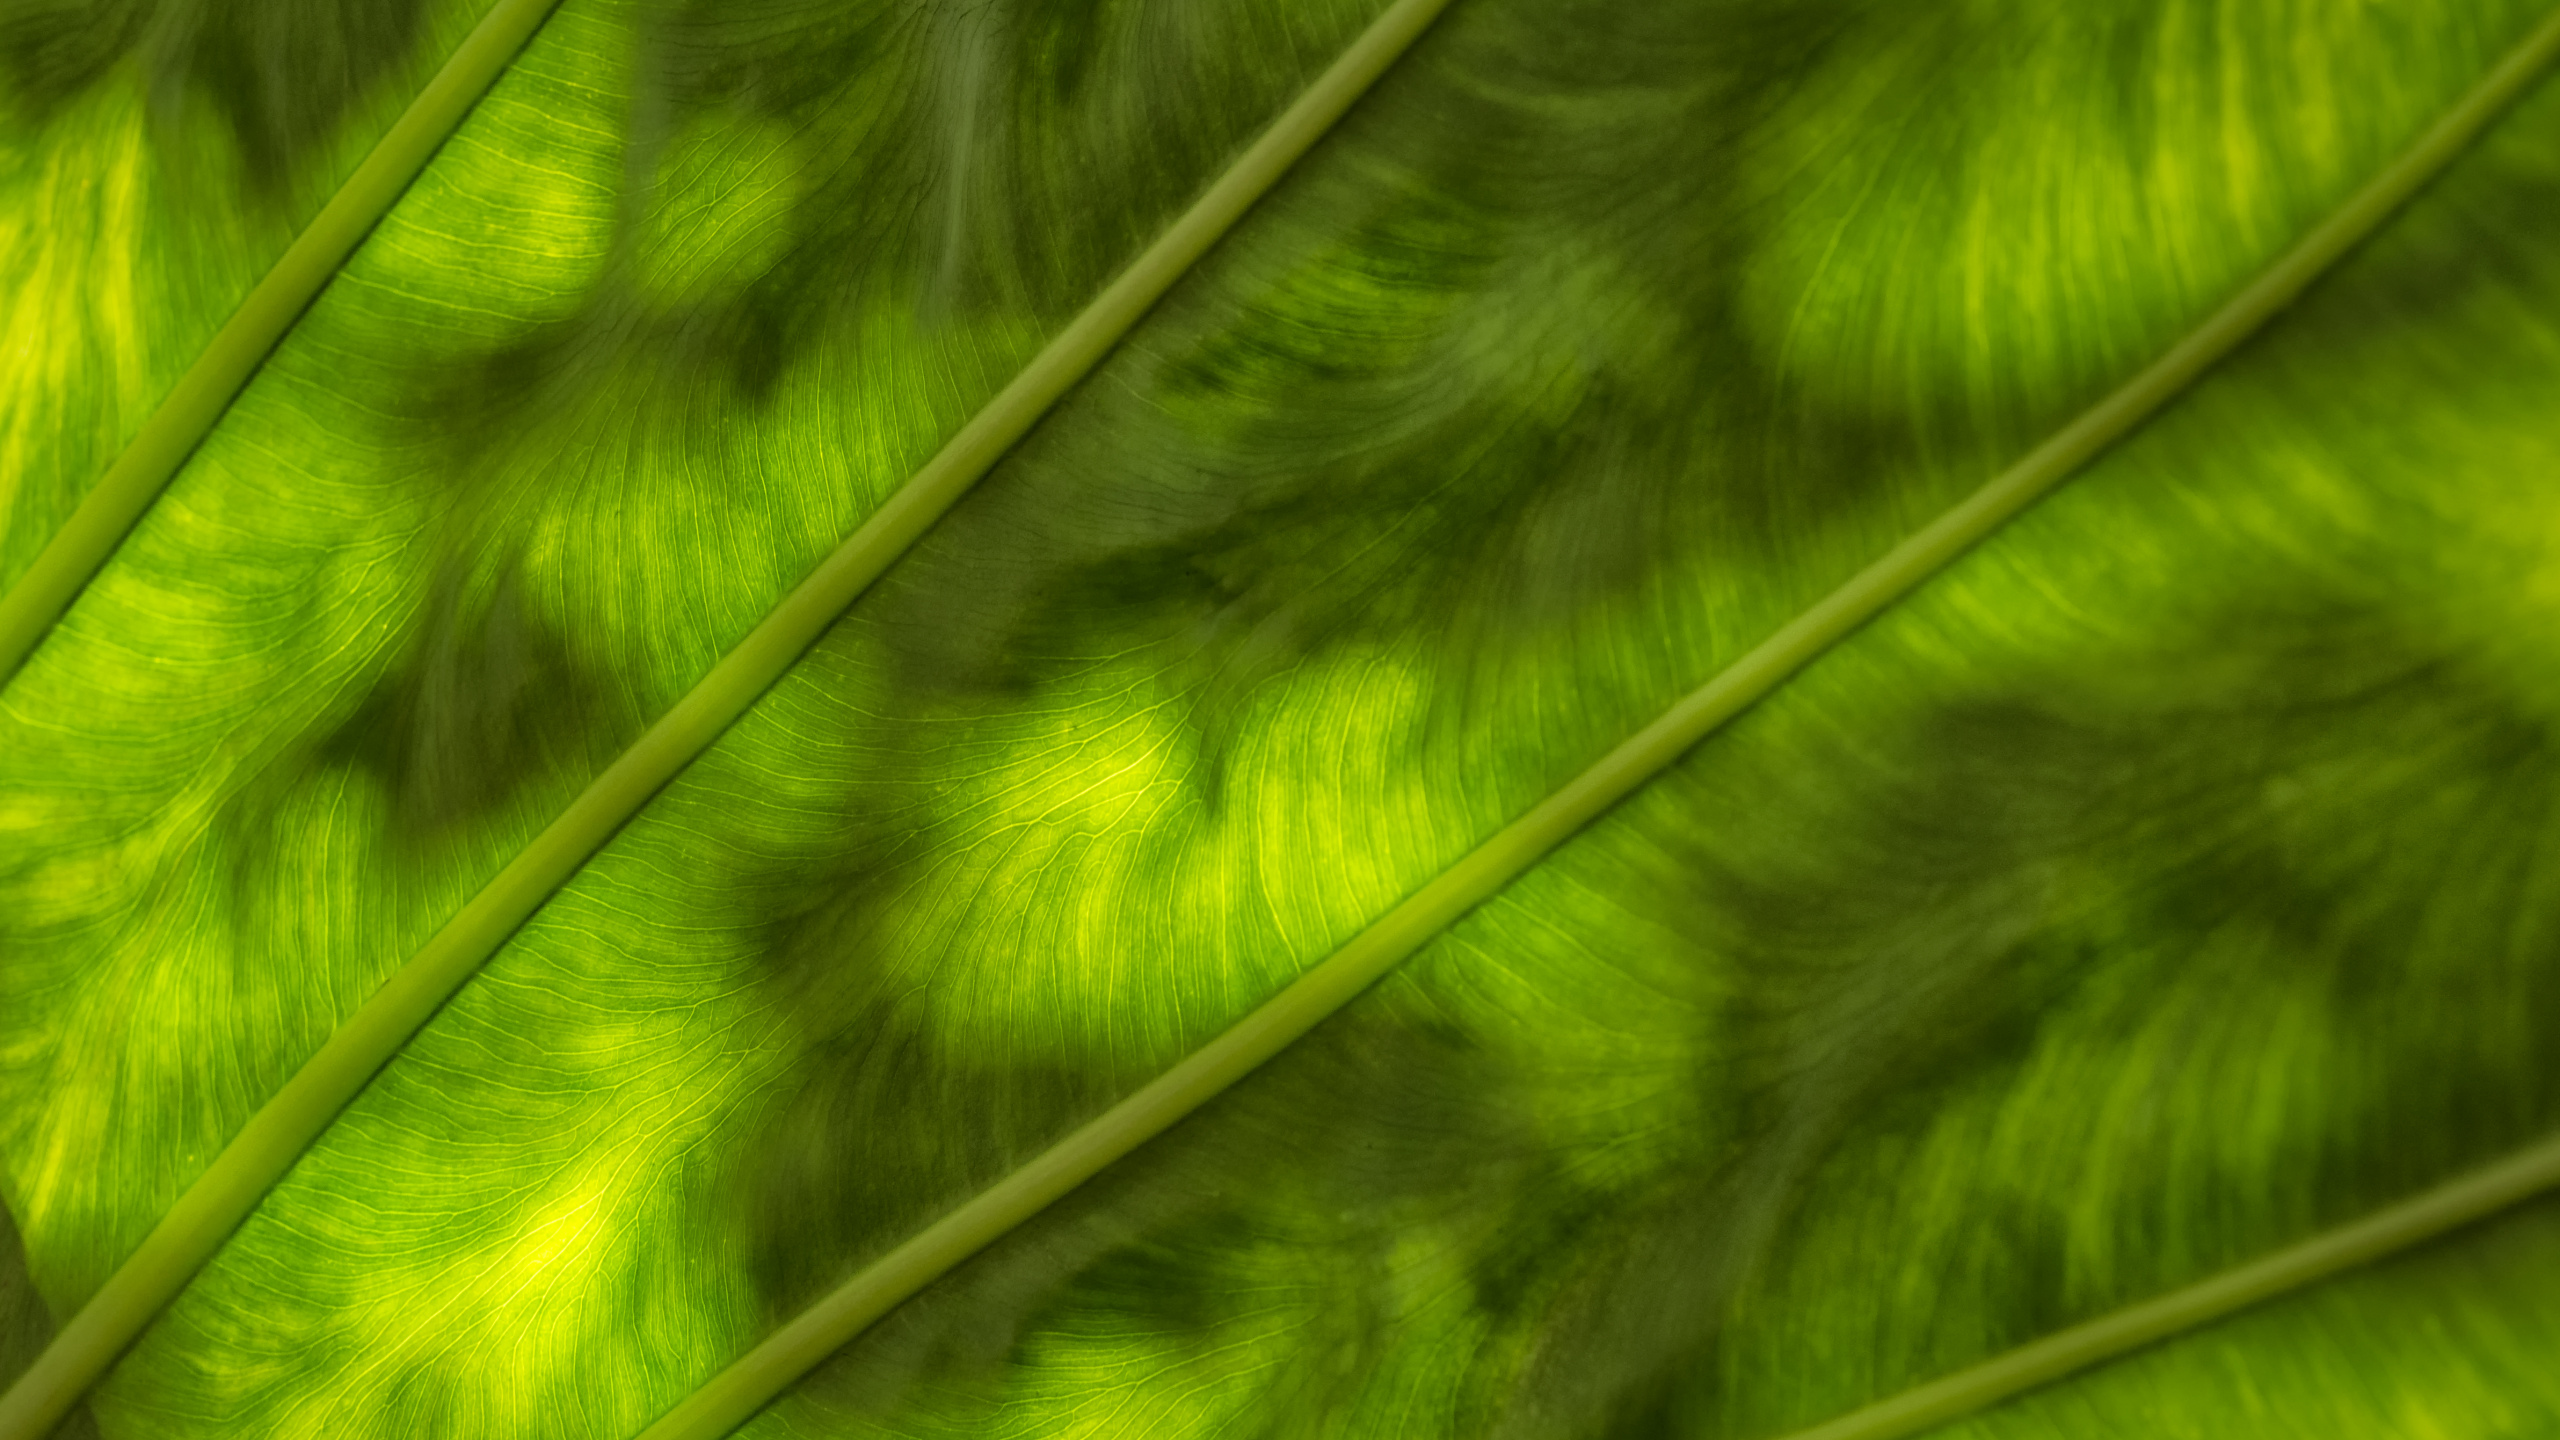 Textil de Rayas Verdes y Blancas. Wallpaper in 2560x1440 Resolution